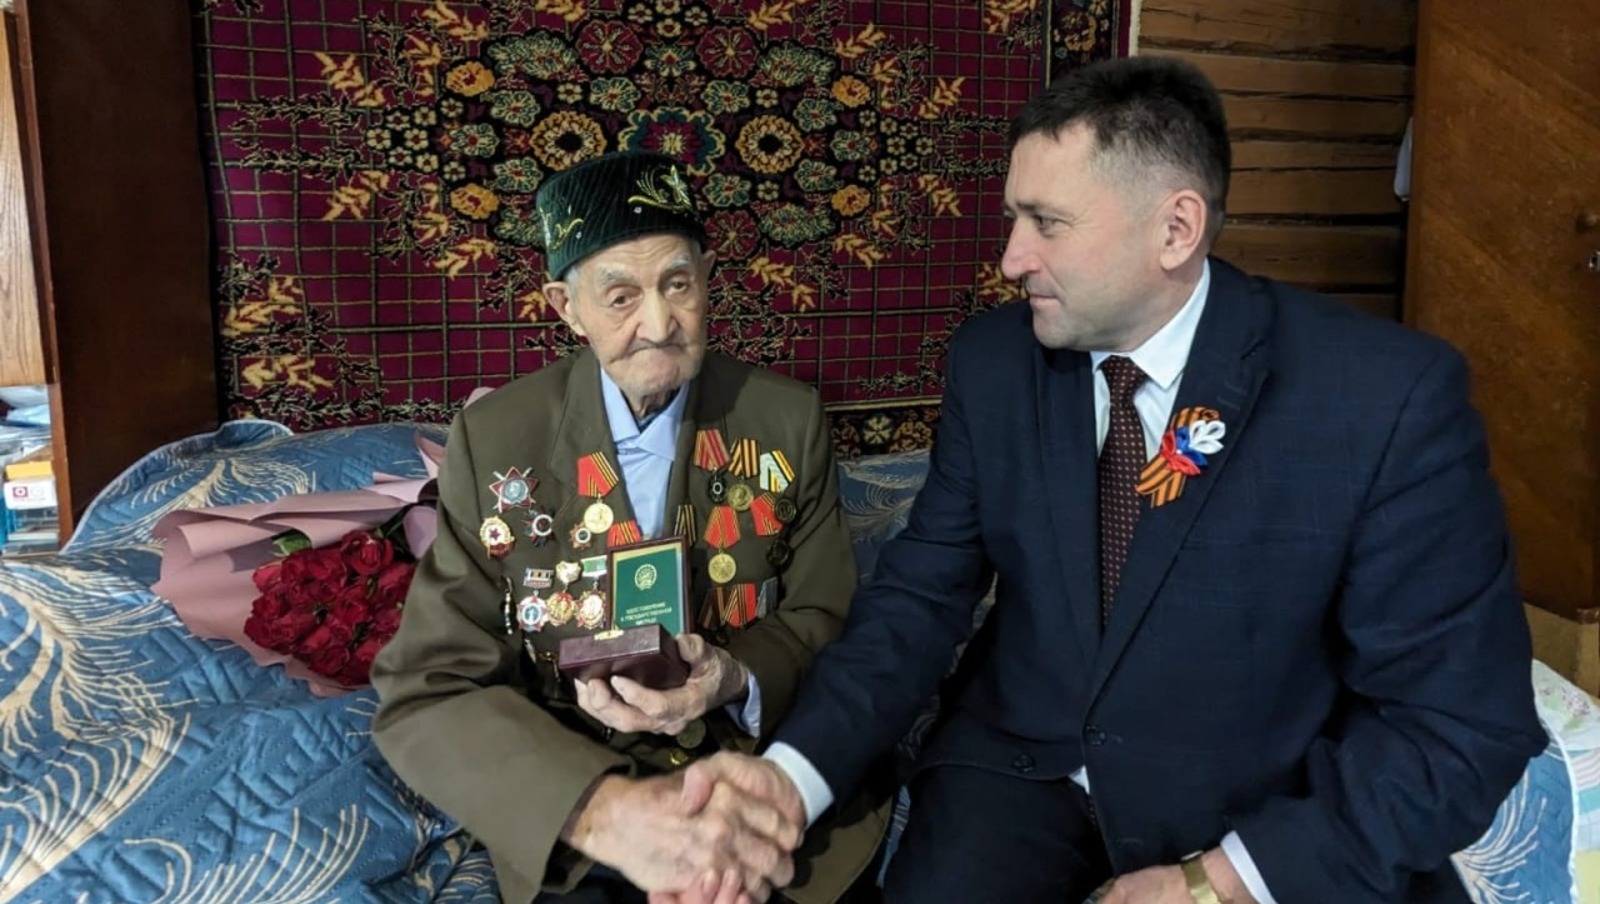 Столетнему ветерану в Башкирии вручили орден Шаймуратова